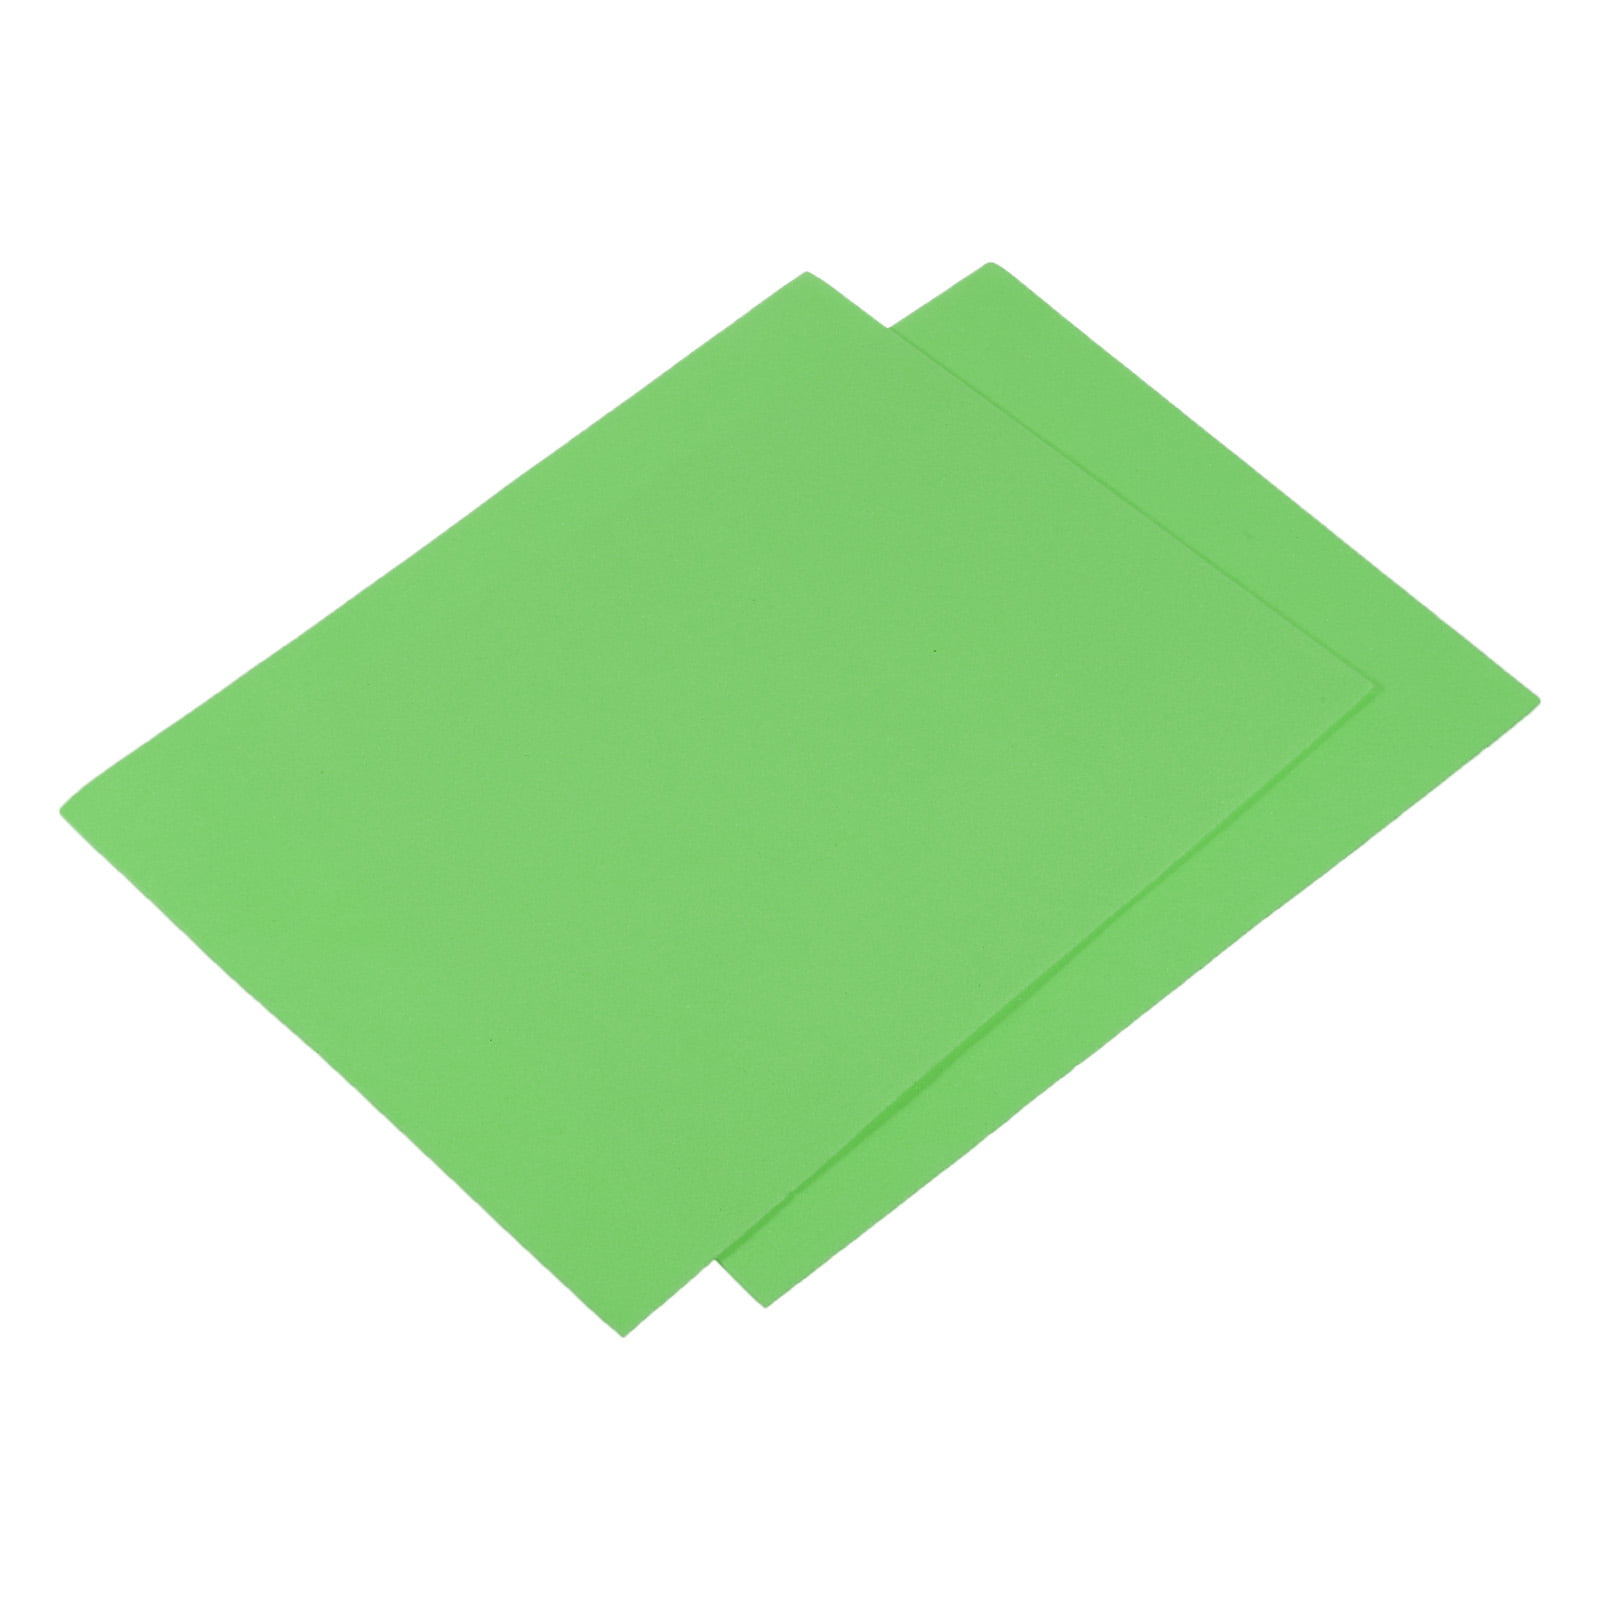 Green, rectangular, foam sticks 10 pk